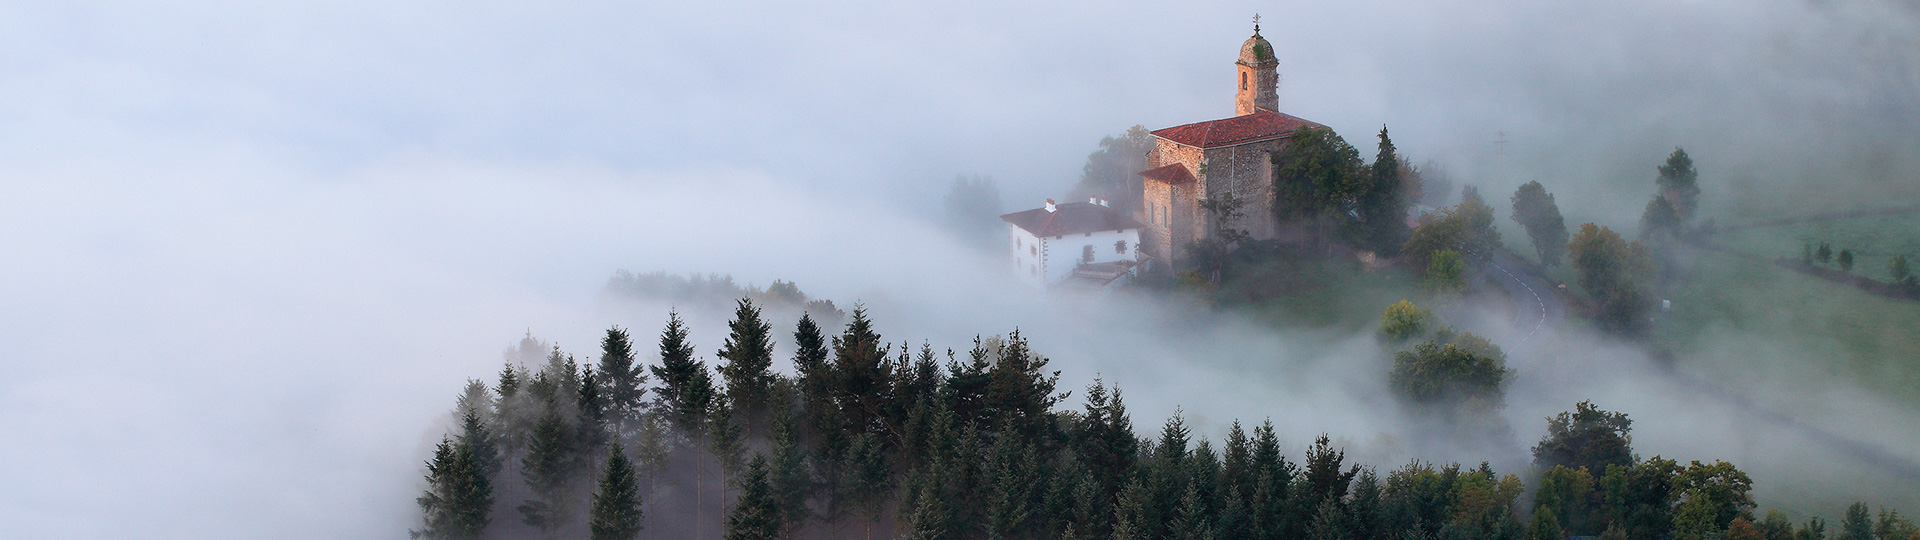 Niebla al amanecer en el valle de Aramayona, País Vasco